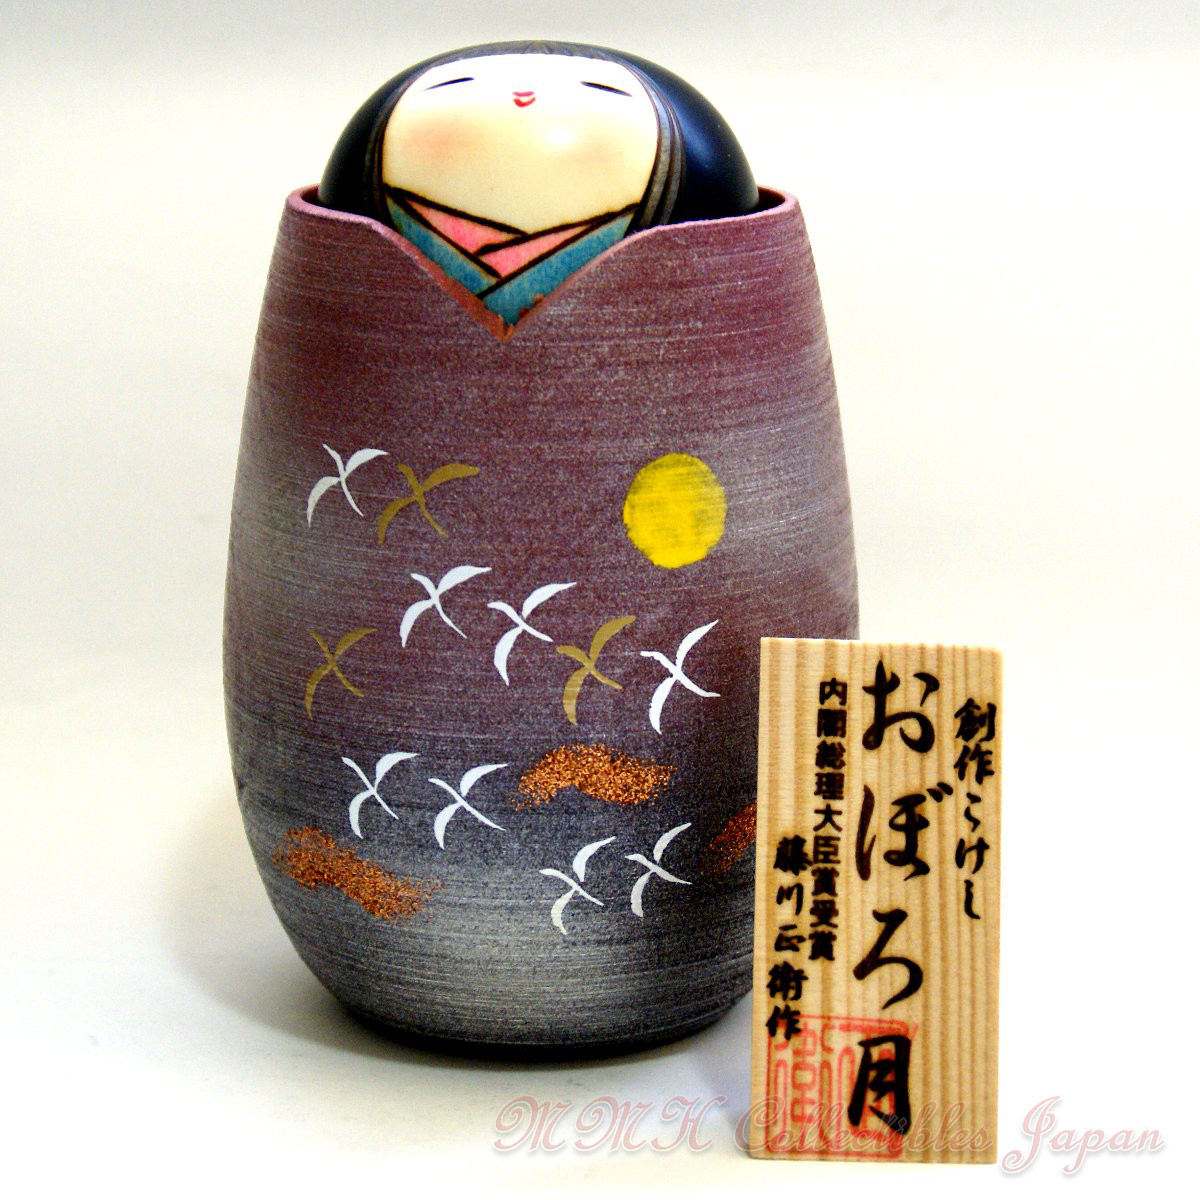 Lovely Creative Kokeshi Doll OBOROTSUKI (CLOUDY MOON) by Masae Fujikawa - MMH Collectibles Japan